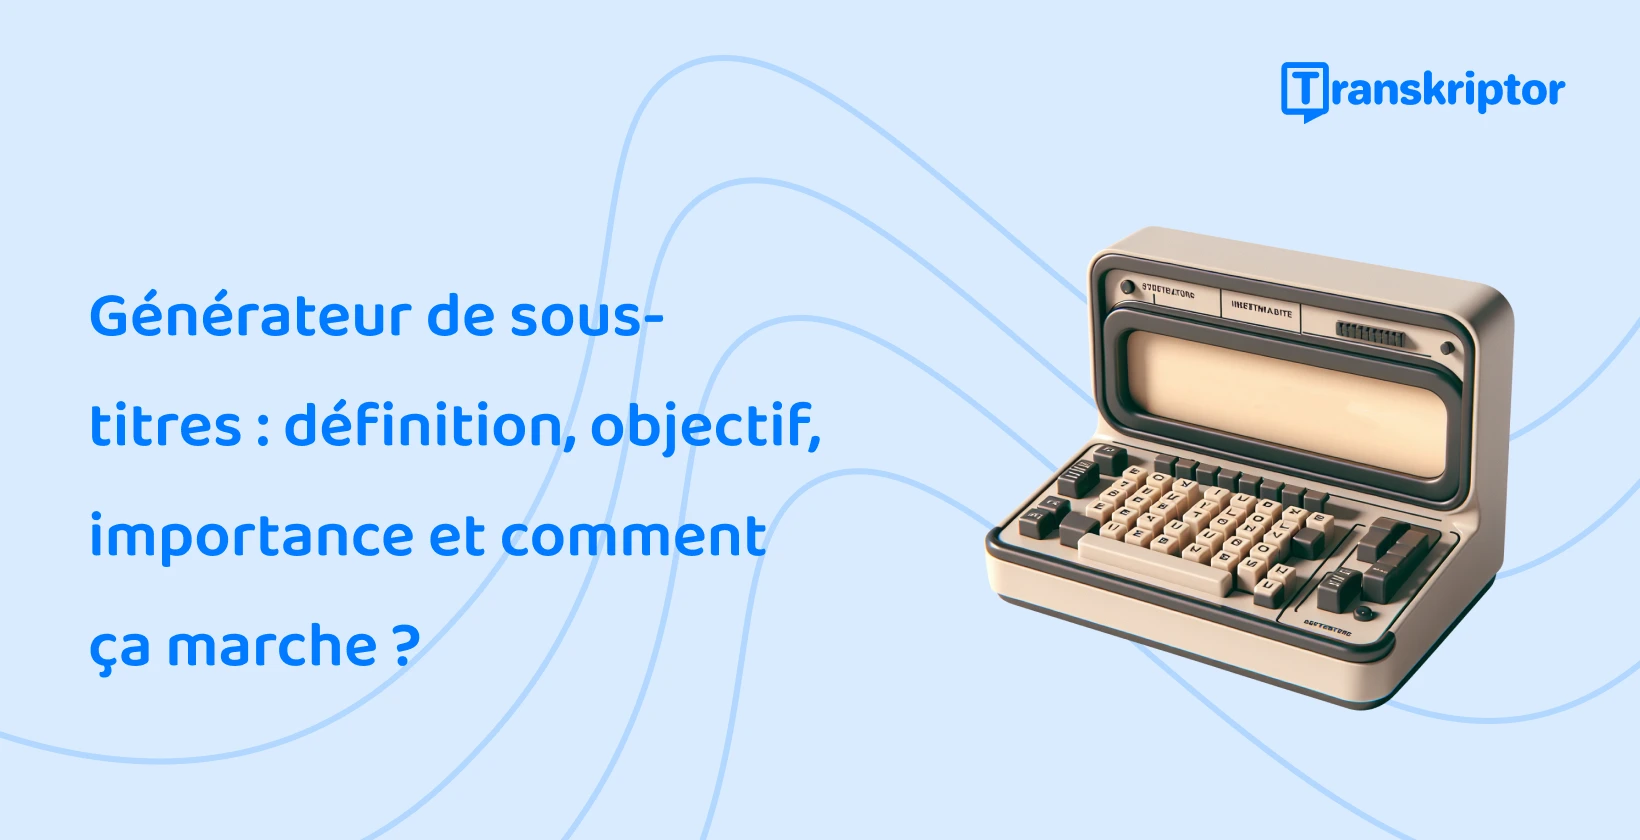 La génération automatique de sous-titres de Transkriptor est représentée par une machine à écrire vintage, une utilisation en ligne facile et gratuite.